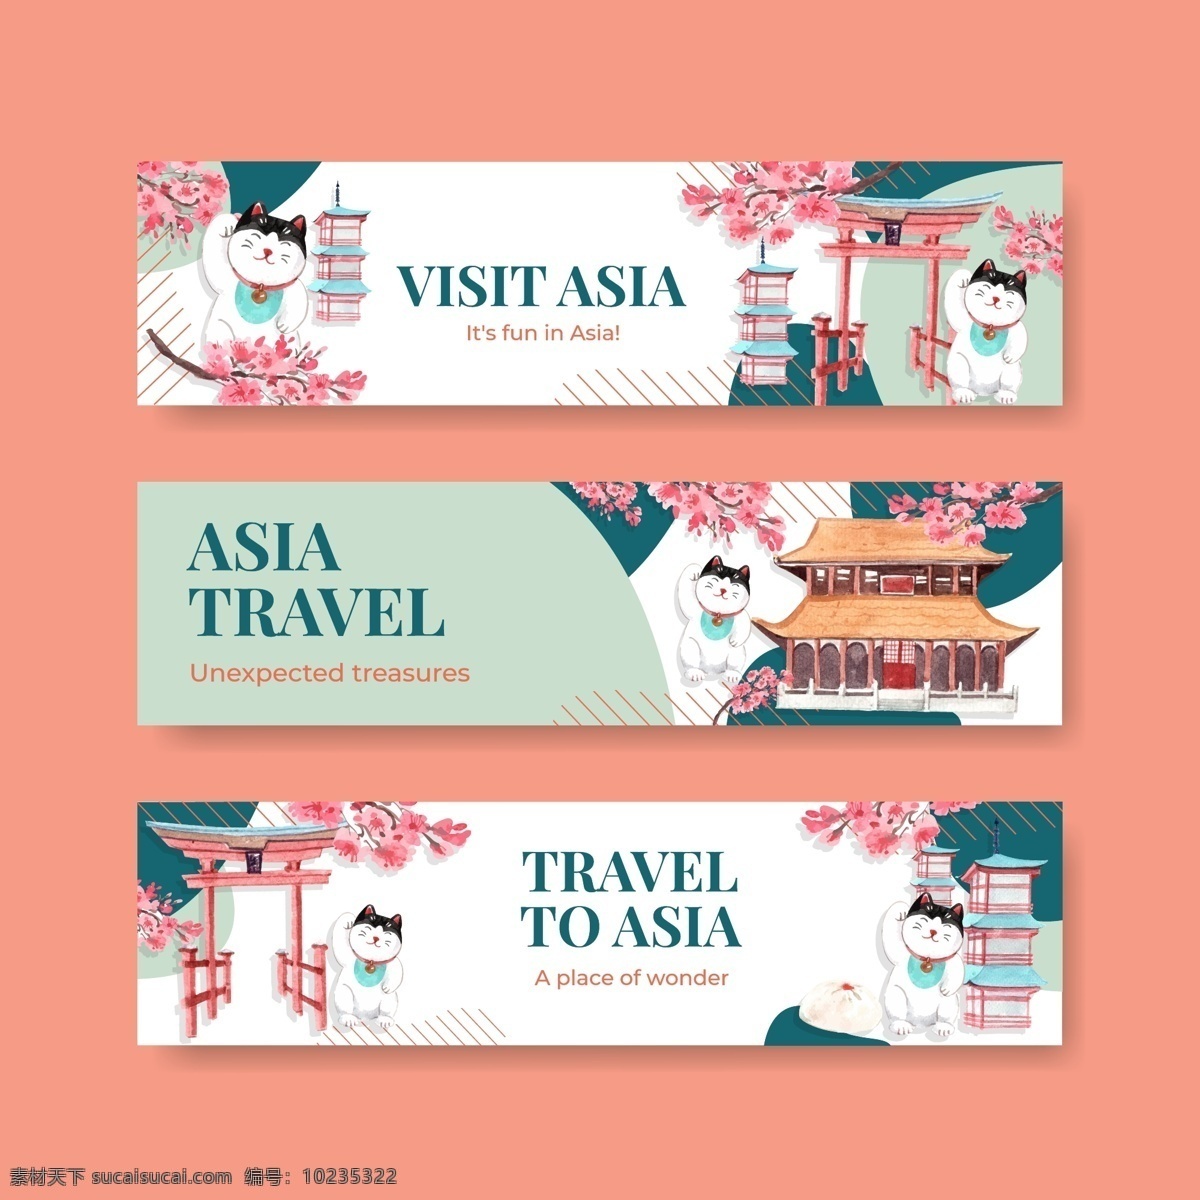 旅行 概念设计 广告 横幅 手绘插画 旅行横幅 矢量横幅 横幅模板 banner